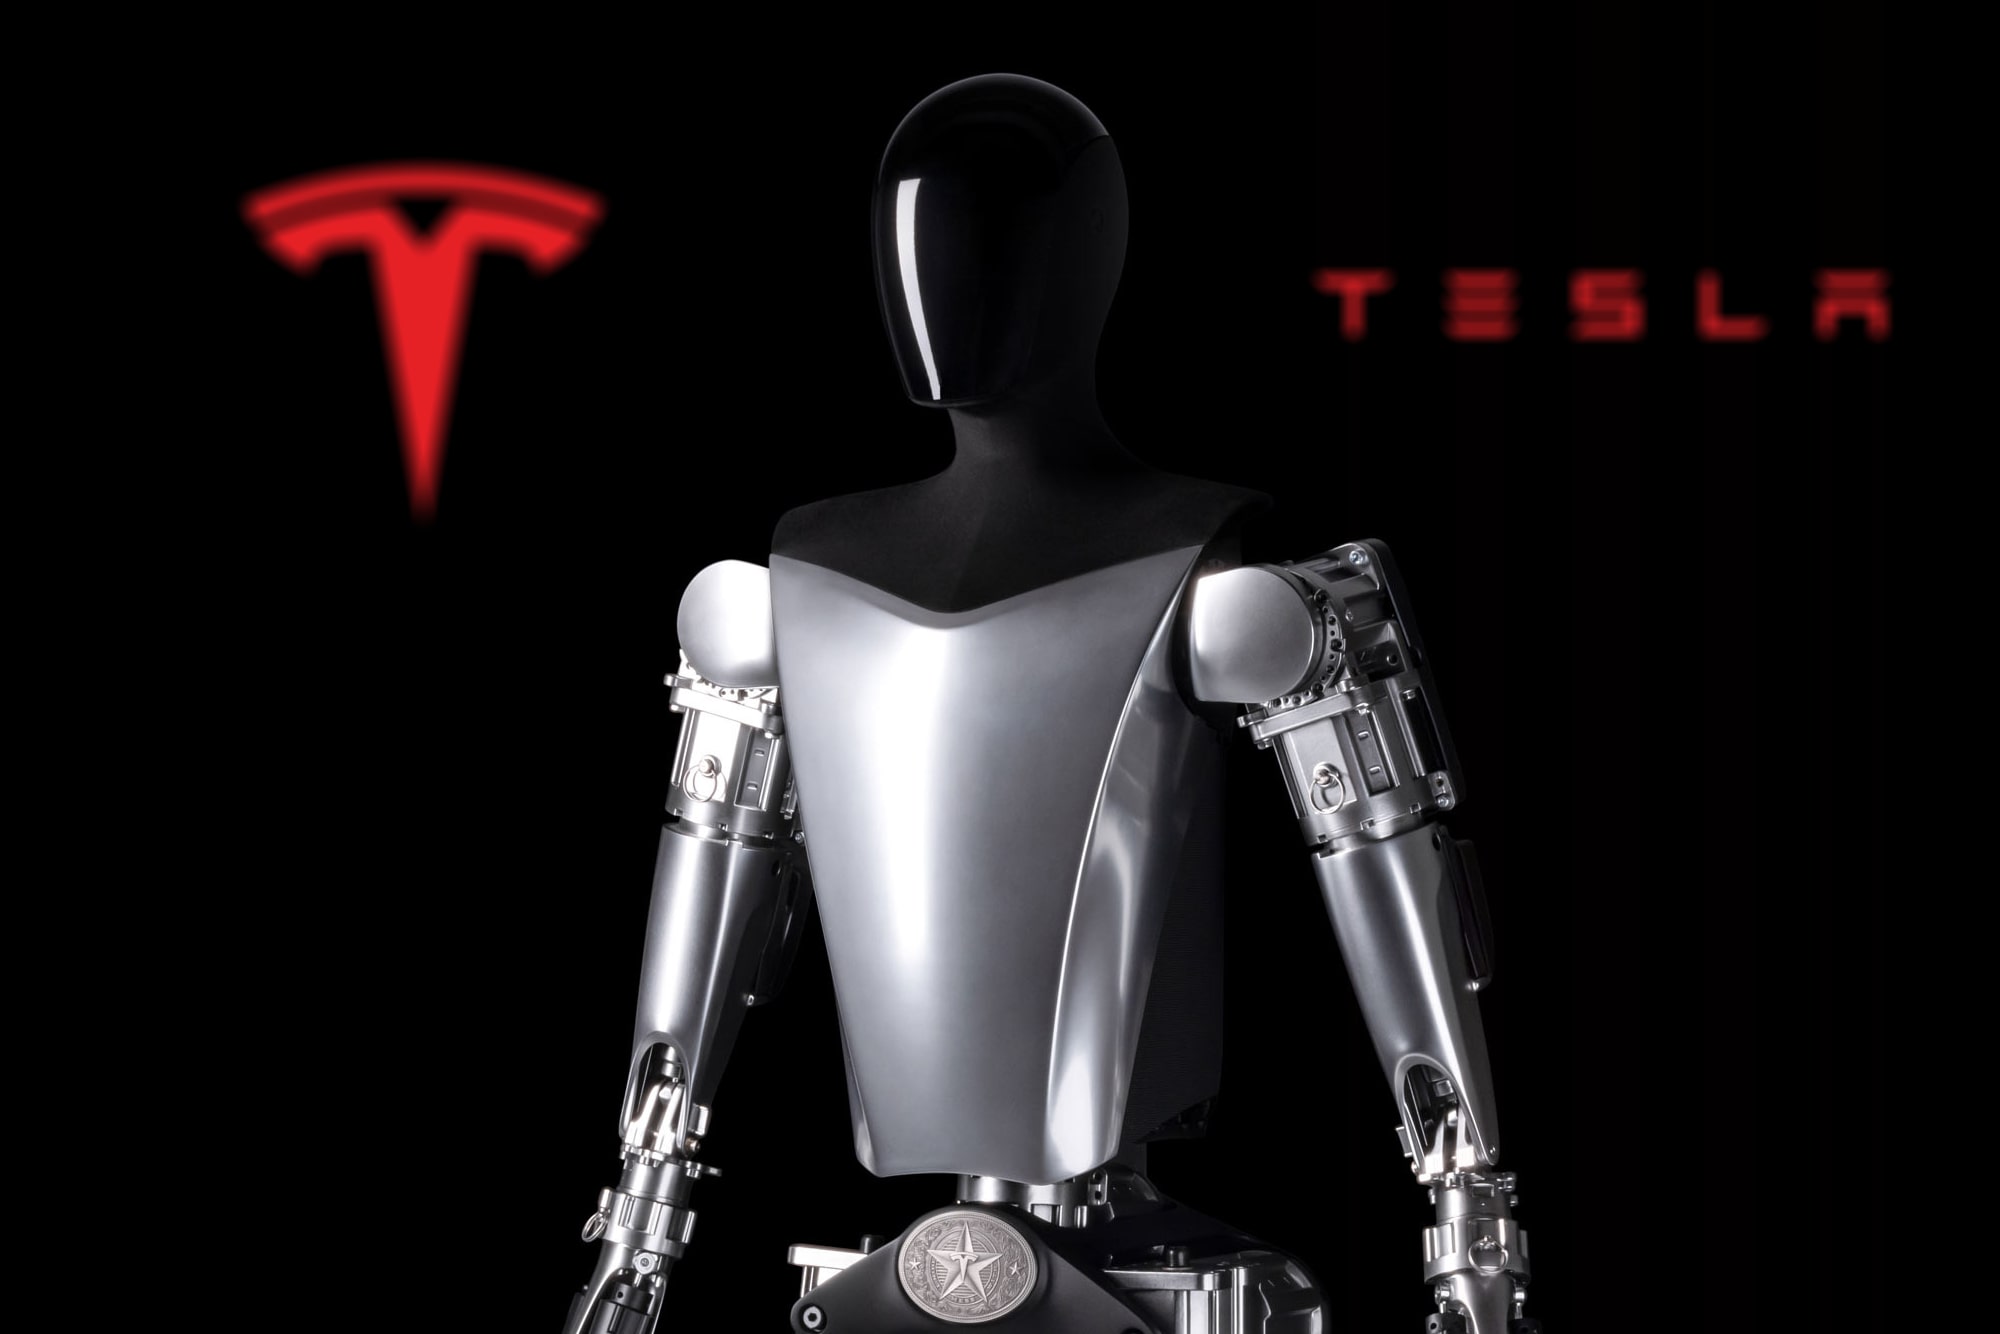 El prototipo de robot Optimus 2022 de Tesla se ve frente al logotipo de la compañía.